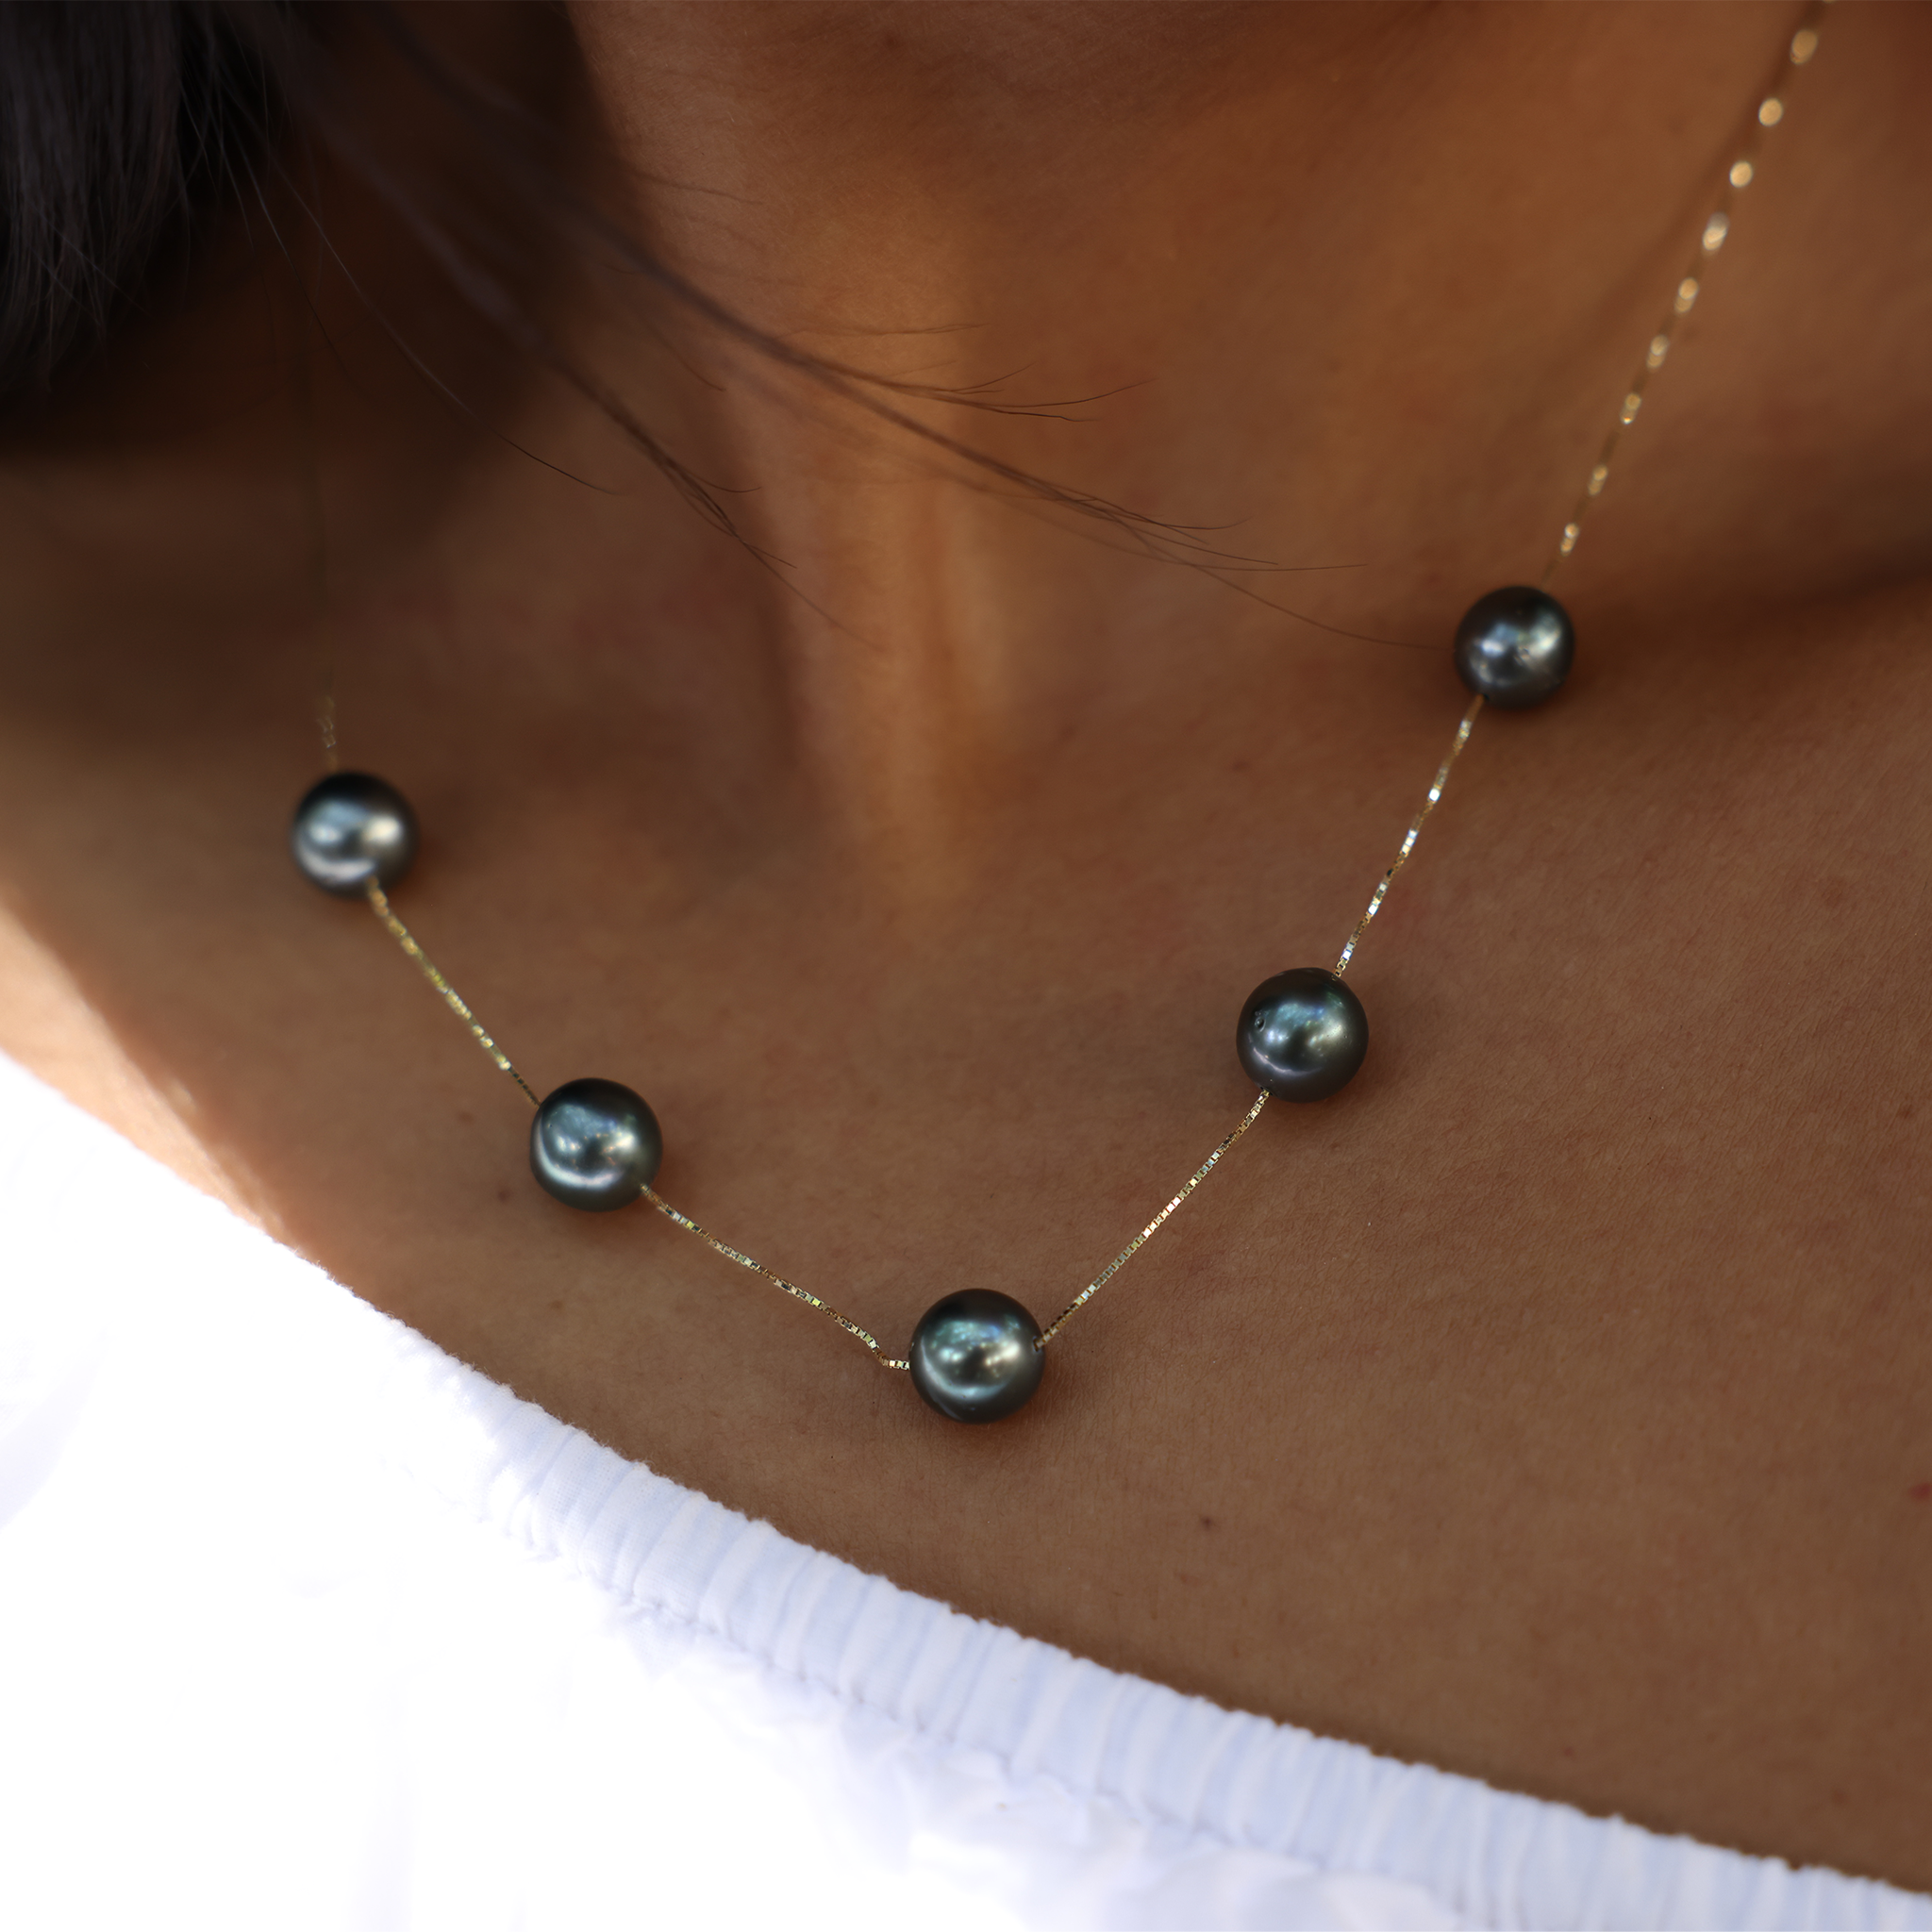 18 "Collier de perle flottant noir tahitien en or - 9-10 mm